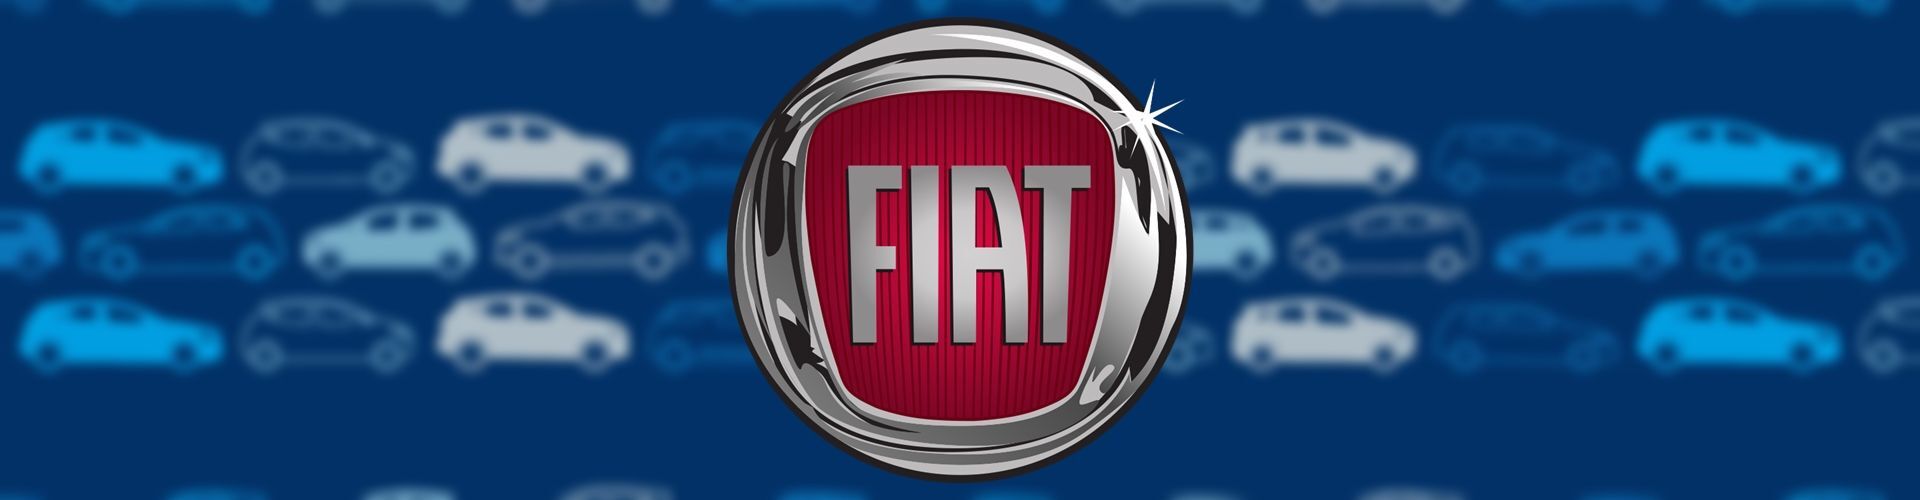 Qué significan las siglas de Fiat